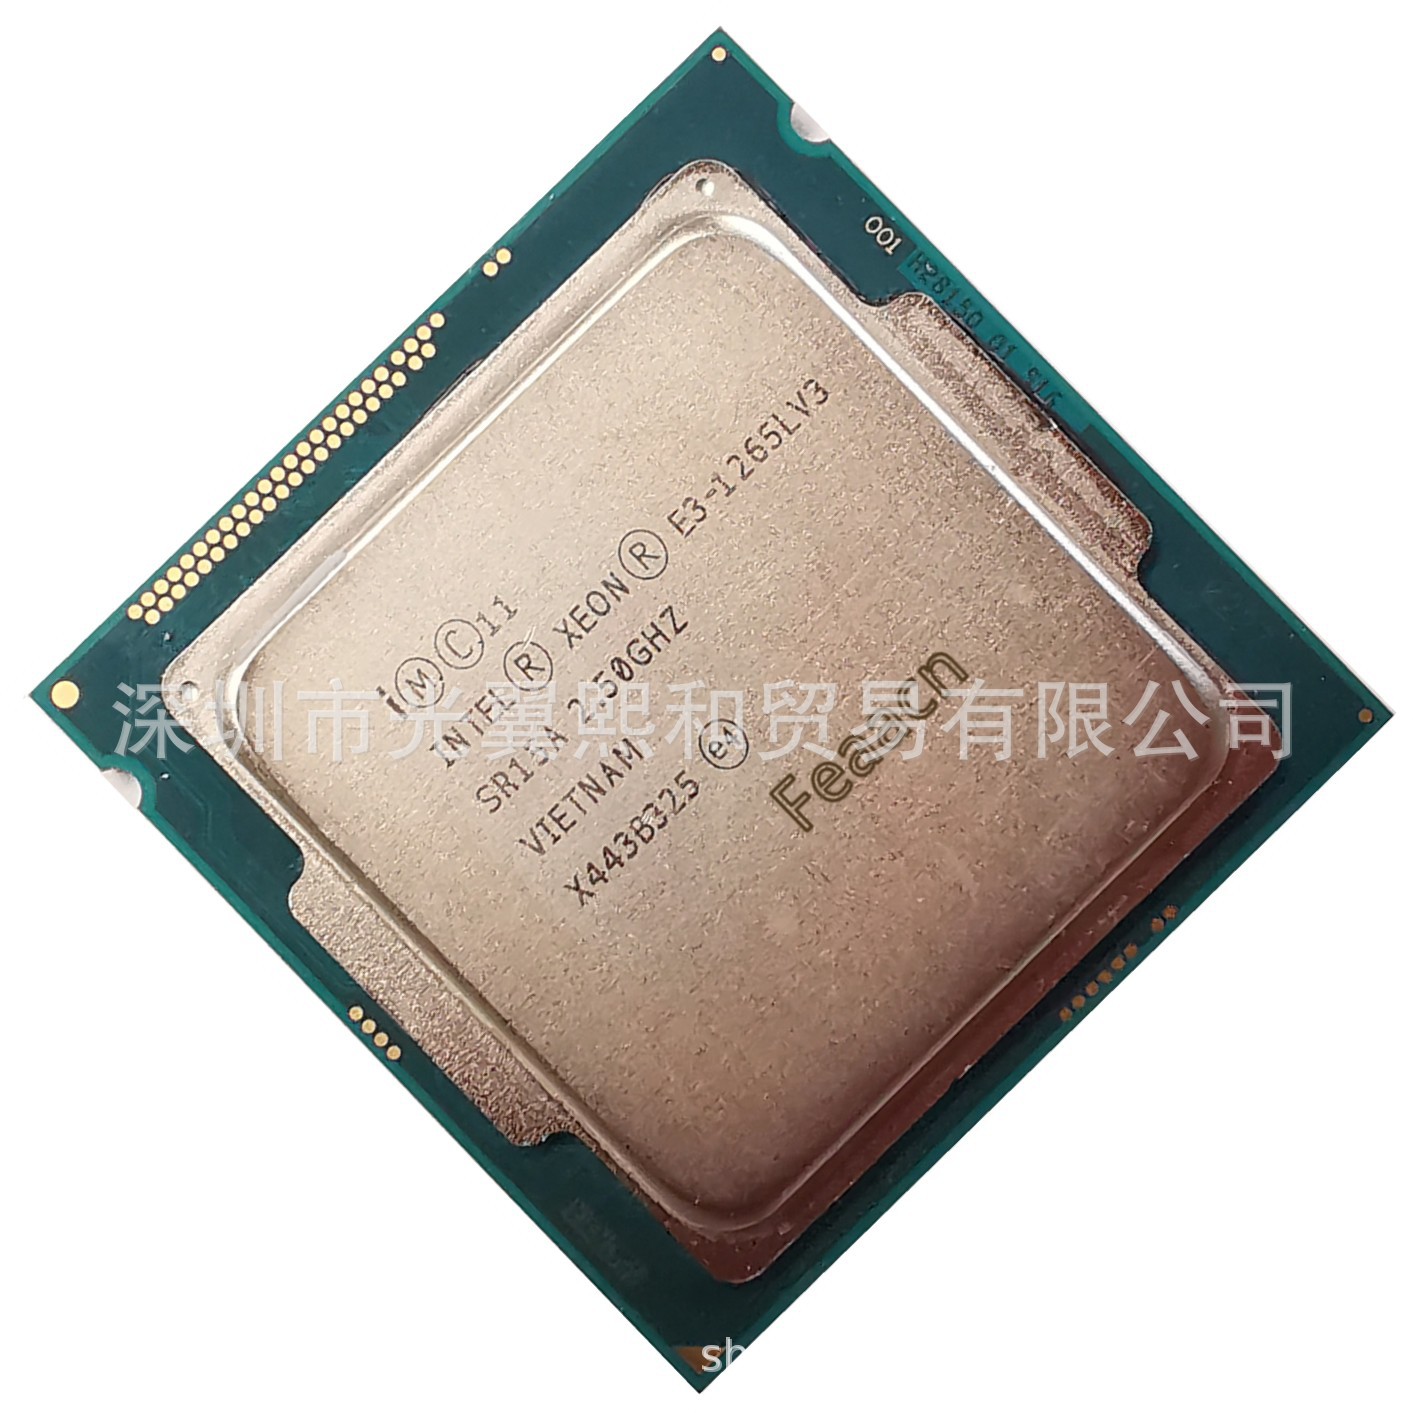 Intel Xeon E3-1265LV3 SR15A 2.50GHZ 4核8线程 45W LGA1150